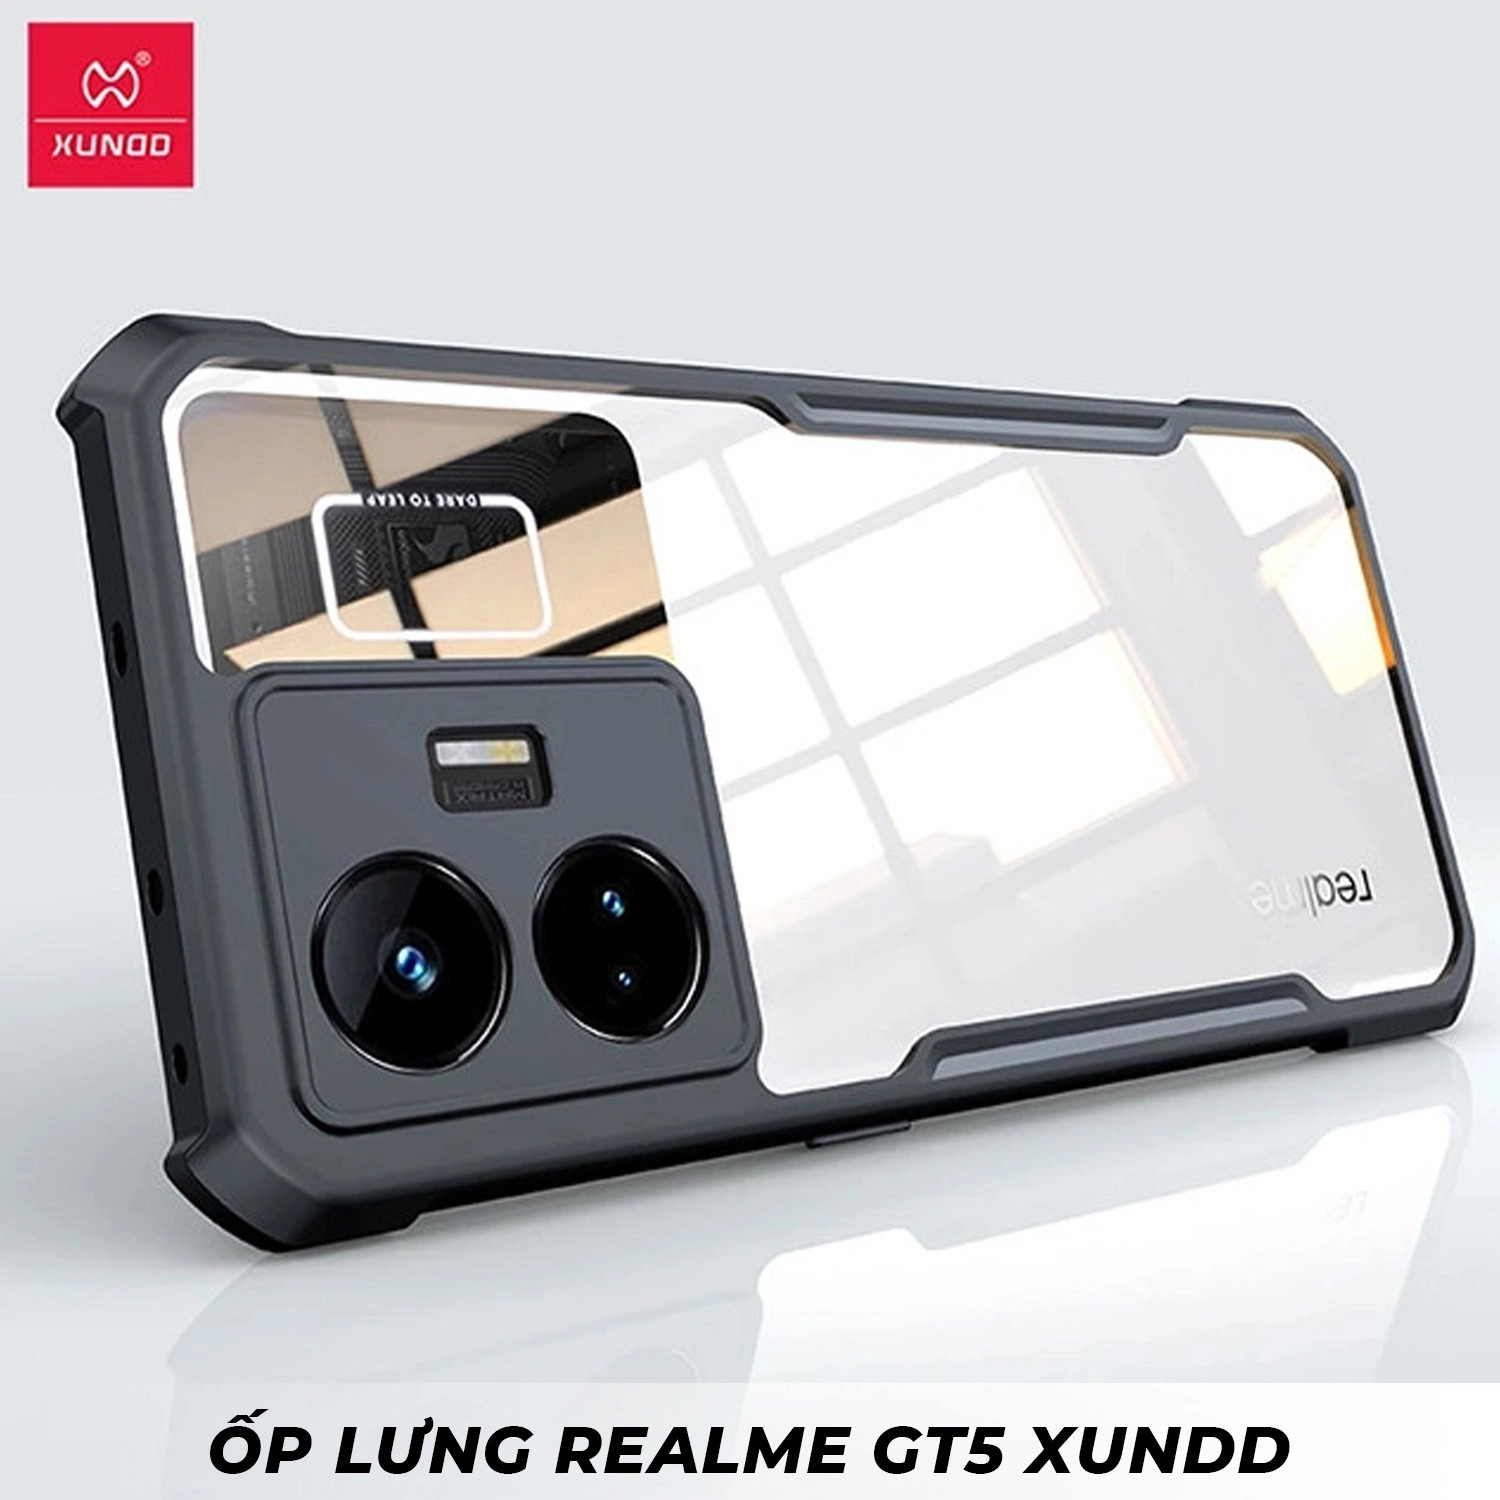 op-lung-realme-gt5-xundd